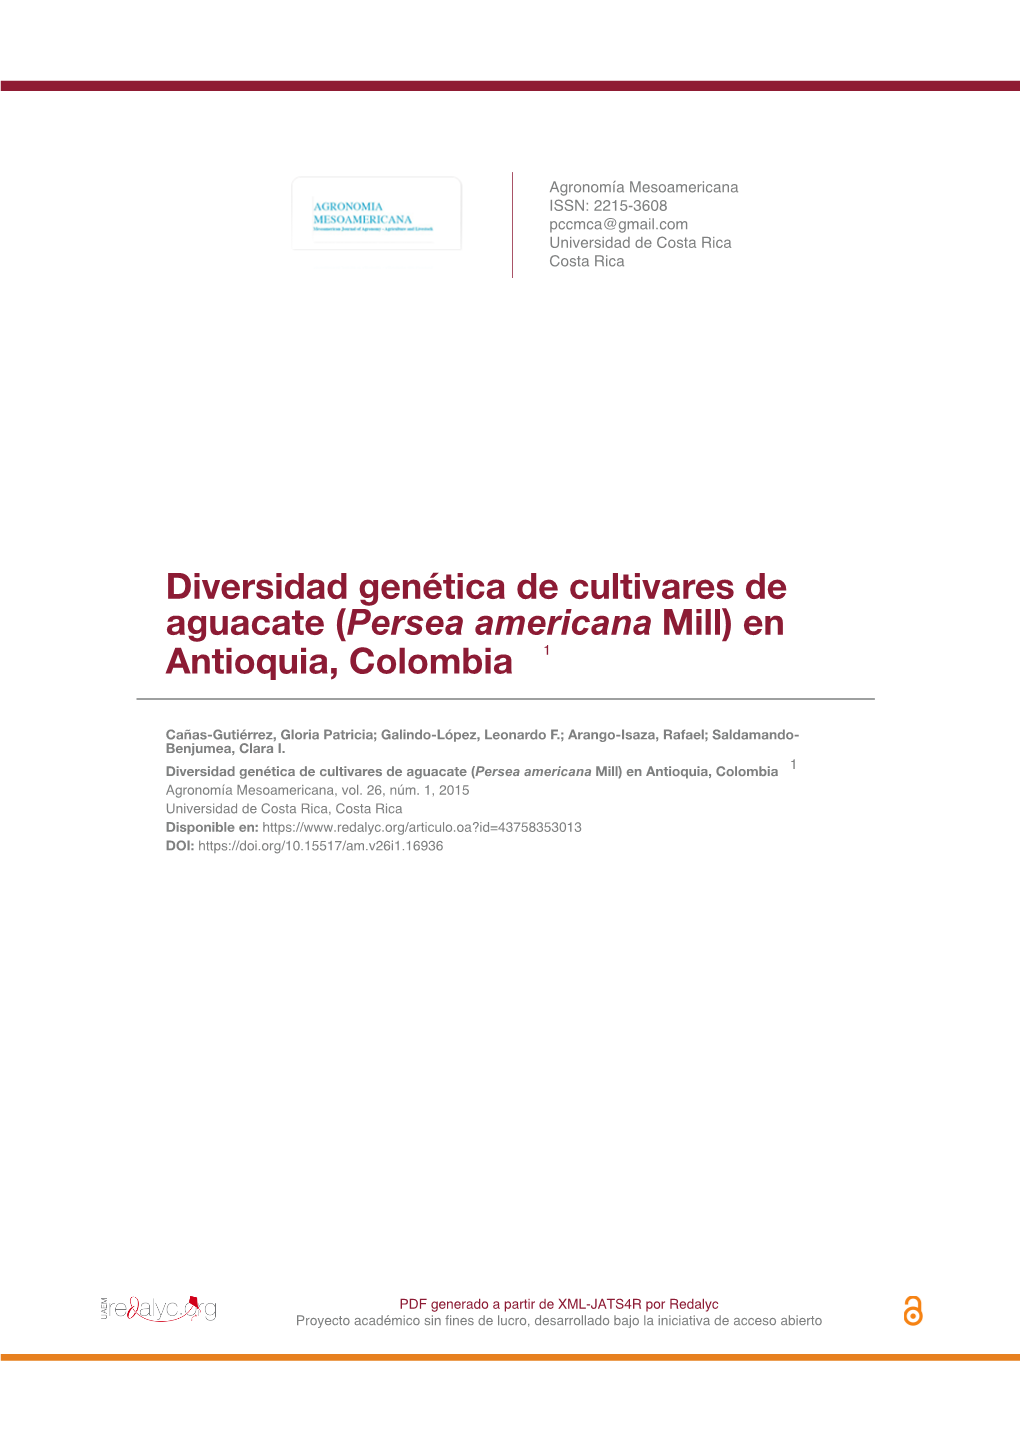 Diversidad Genética De Cultivares De Aguacate (Persea Americana Mill) En Antioquia, Colombia 1